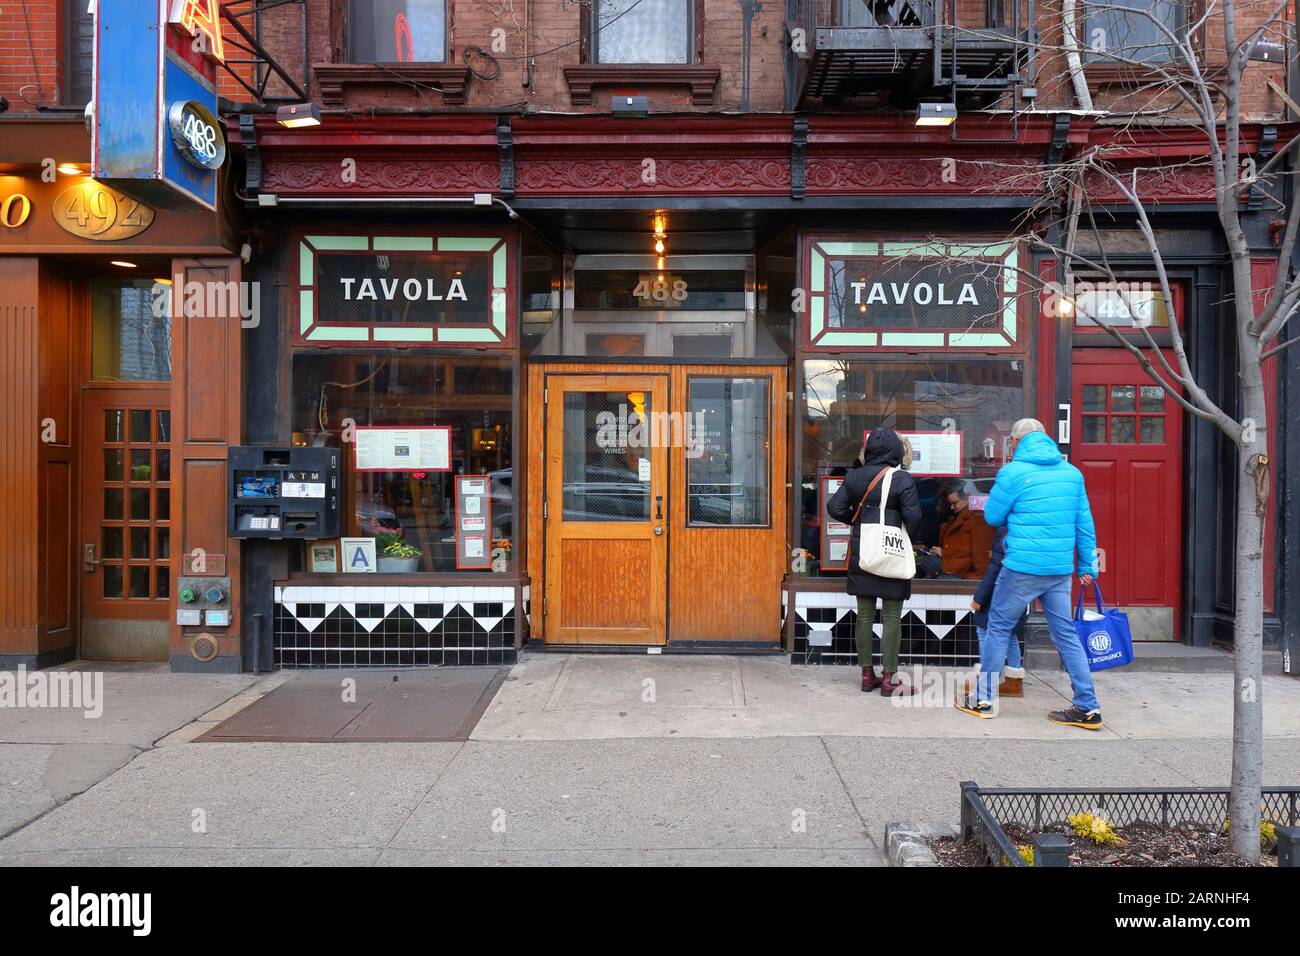 Tavola, 488 9. Avenue, New York, NYC Schaufensterfoto eines italienischen Restaurants im Viertel Hell's Kitchen in Manhattan. Stockfoto